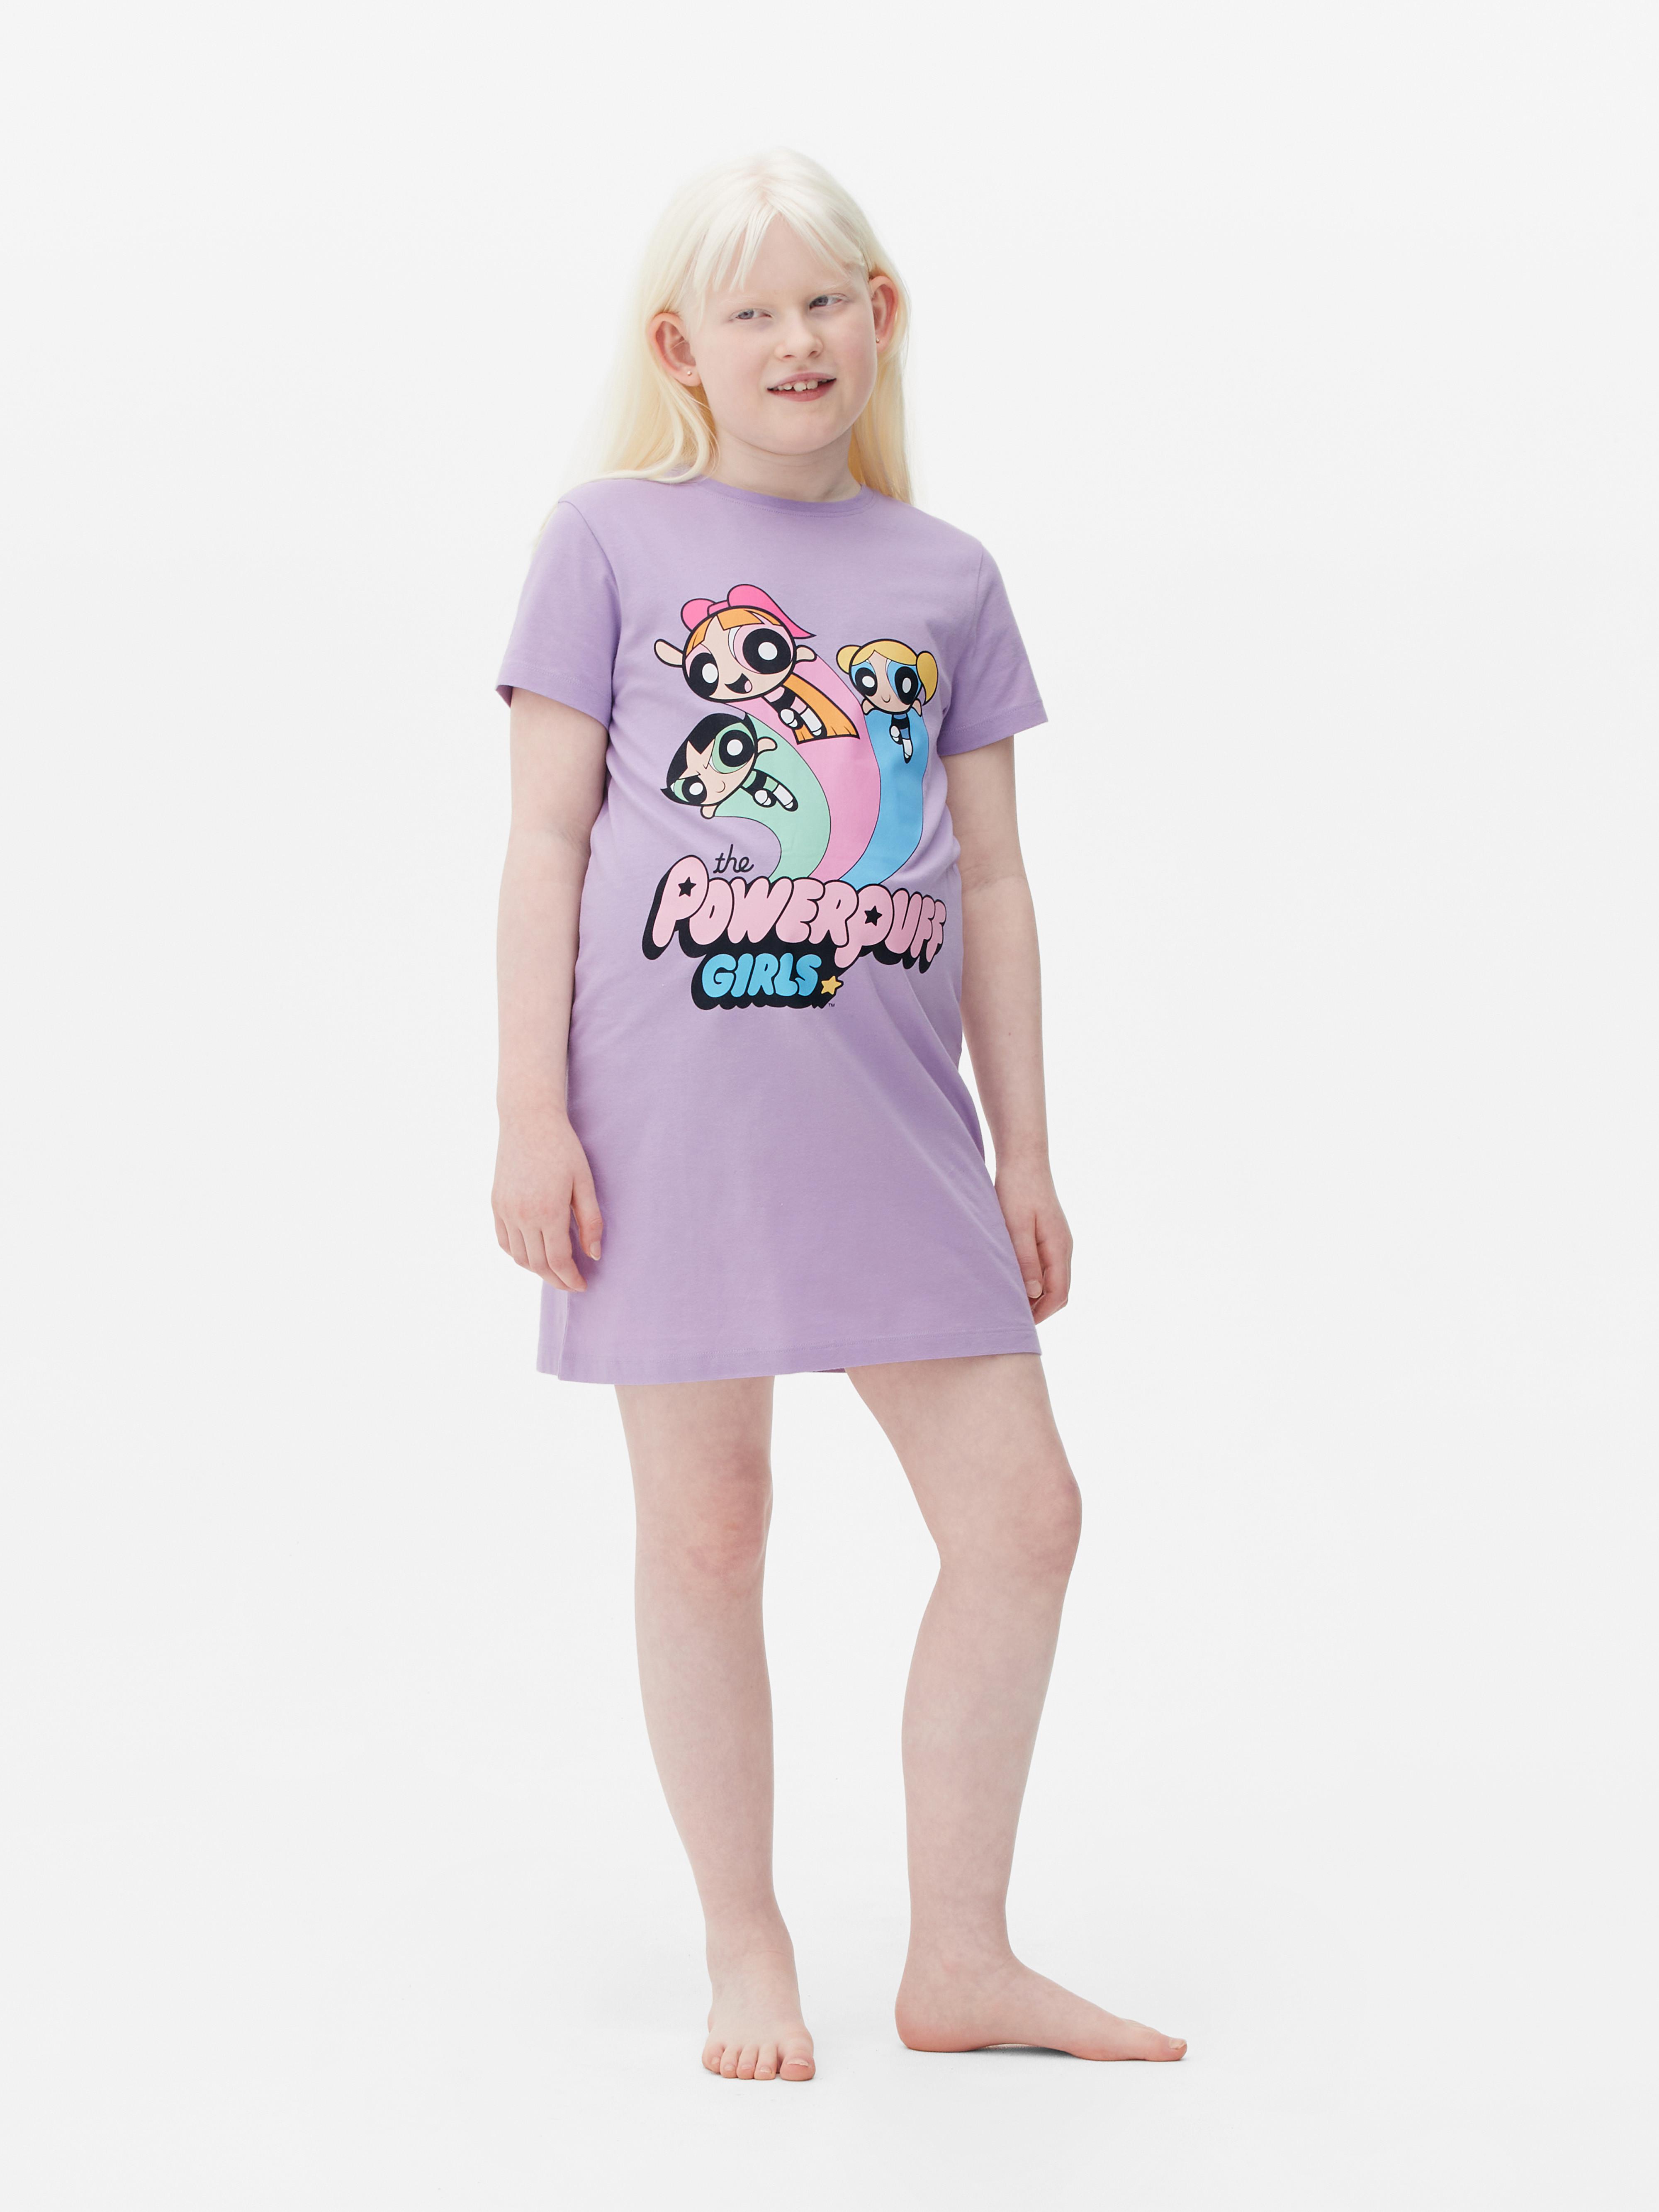 The Powerpuff Girls Sleep T-Shirt